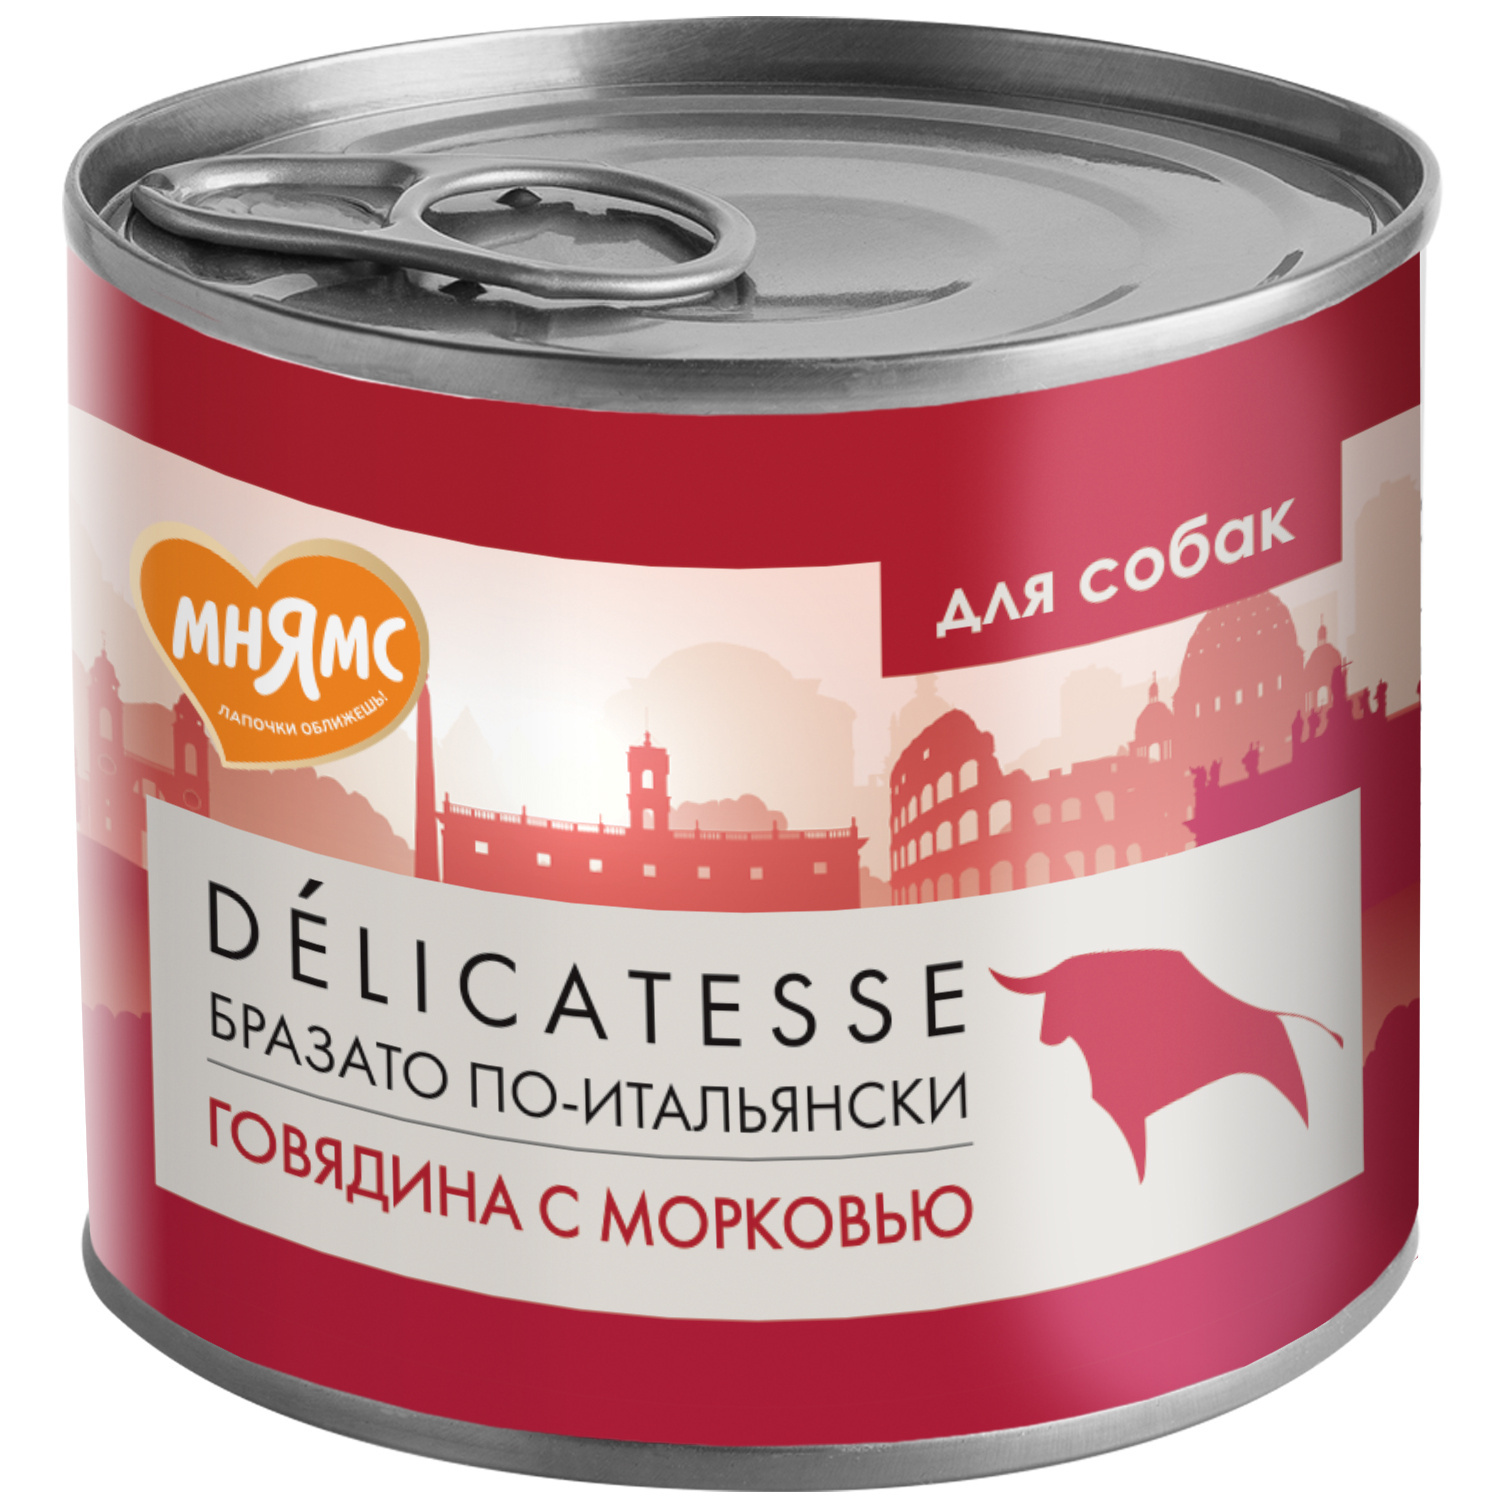 Мнямс Мнямс консервы Бразато по-итальянски для собак всех пород из говядины с морковью (200 г) мнямс паштет из говядины и ягненка для собак всех пород здоровые суставы 200 г х 12 шт